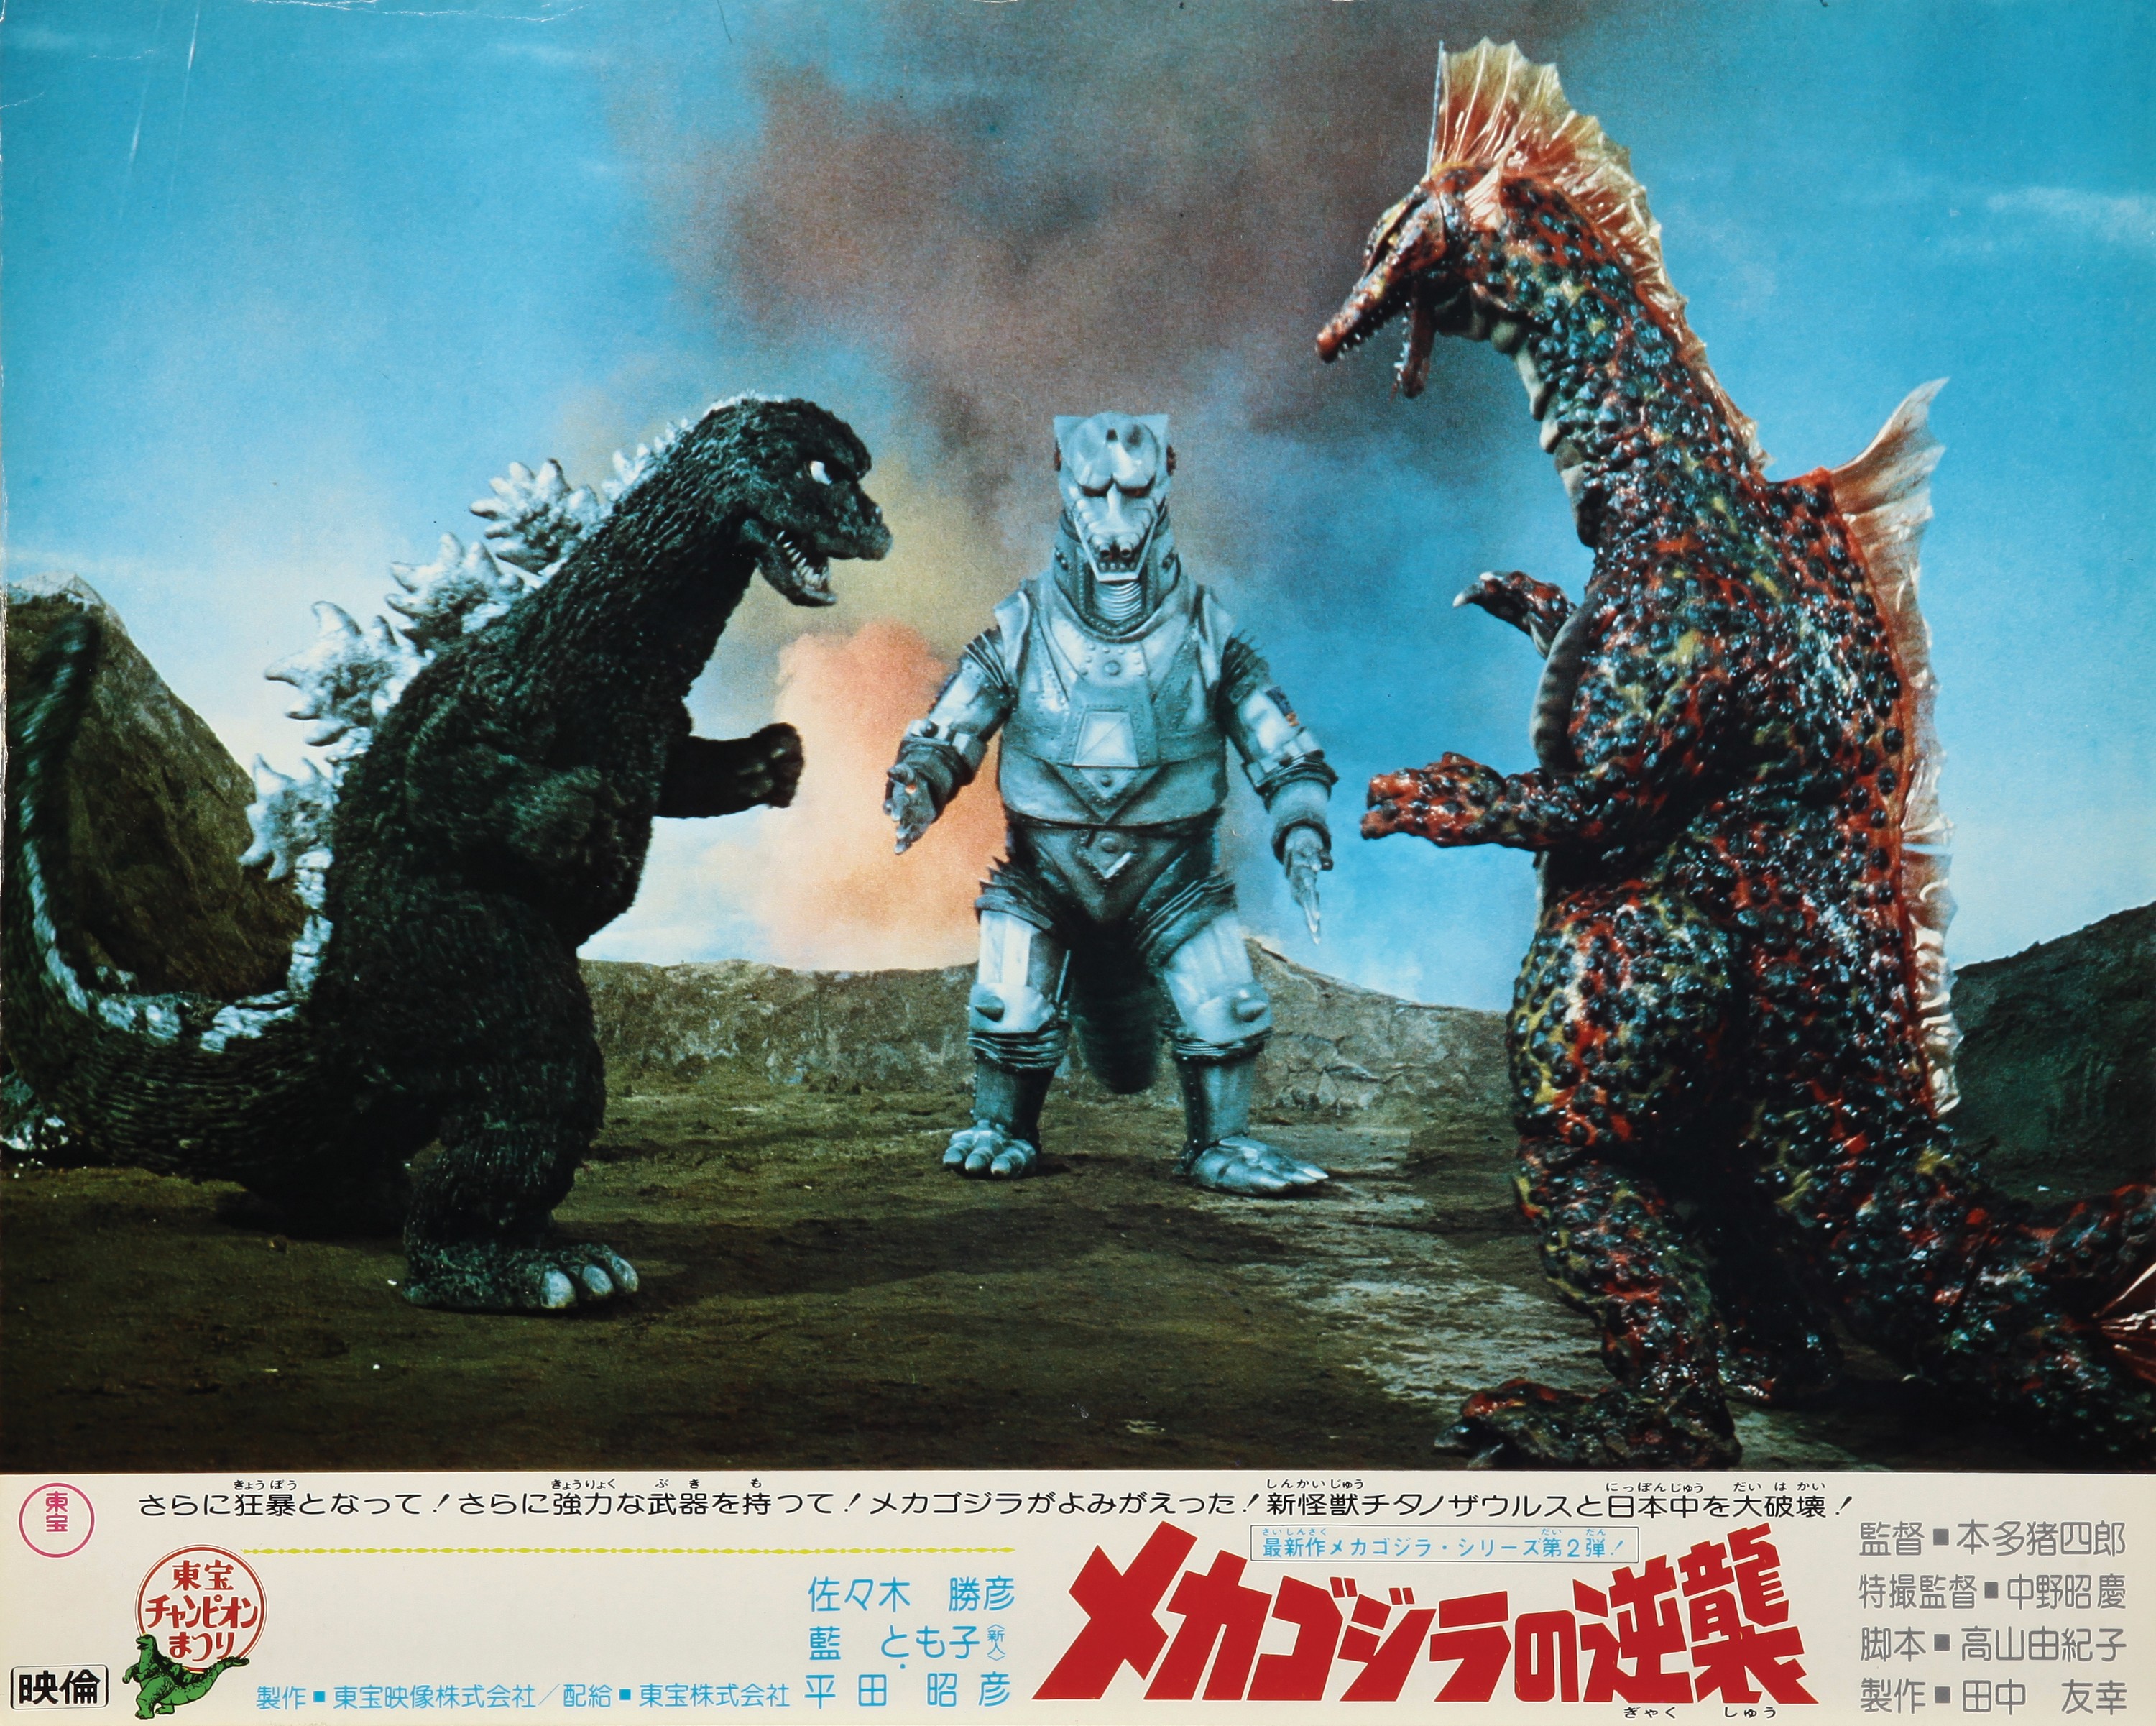 TERROR OF MECHAGODZILLA, (aka MEKAGOJIRA NO GYAKUSHU, aka MONSTERS FROM AN UNKNOWN PLANET, aka THE TERROR OF GODZILLA), Japanese poster art, from left: Godzilla, Mechagodzilla, 1975.